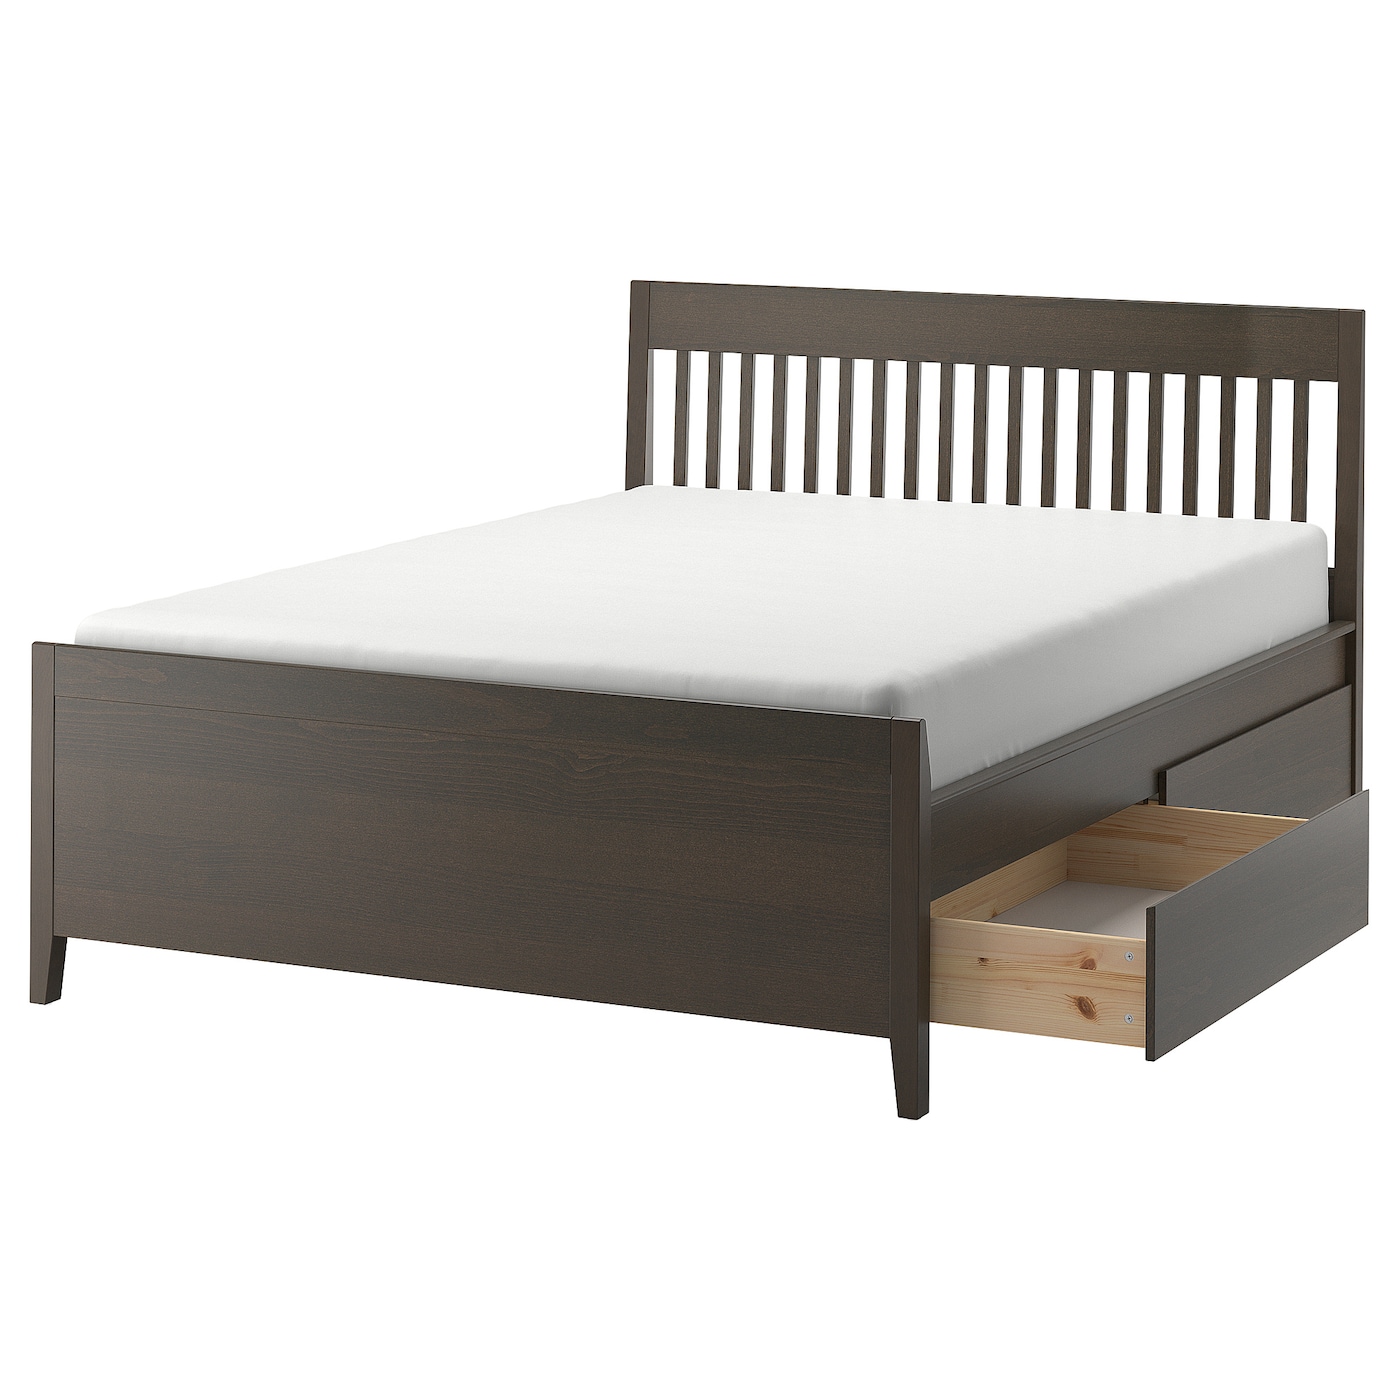 Каркас кровати с ящиками - IKEA IDANÄS/IDANAS, 200х160 см, темно-коричневый, ИДАНЭС ИКЕА